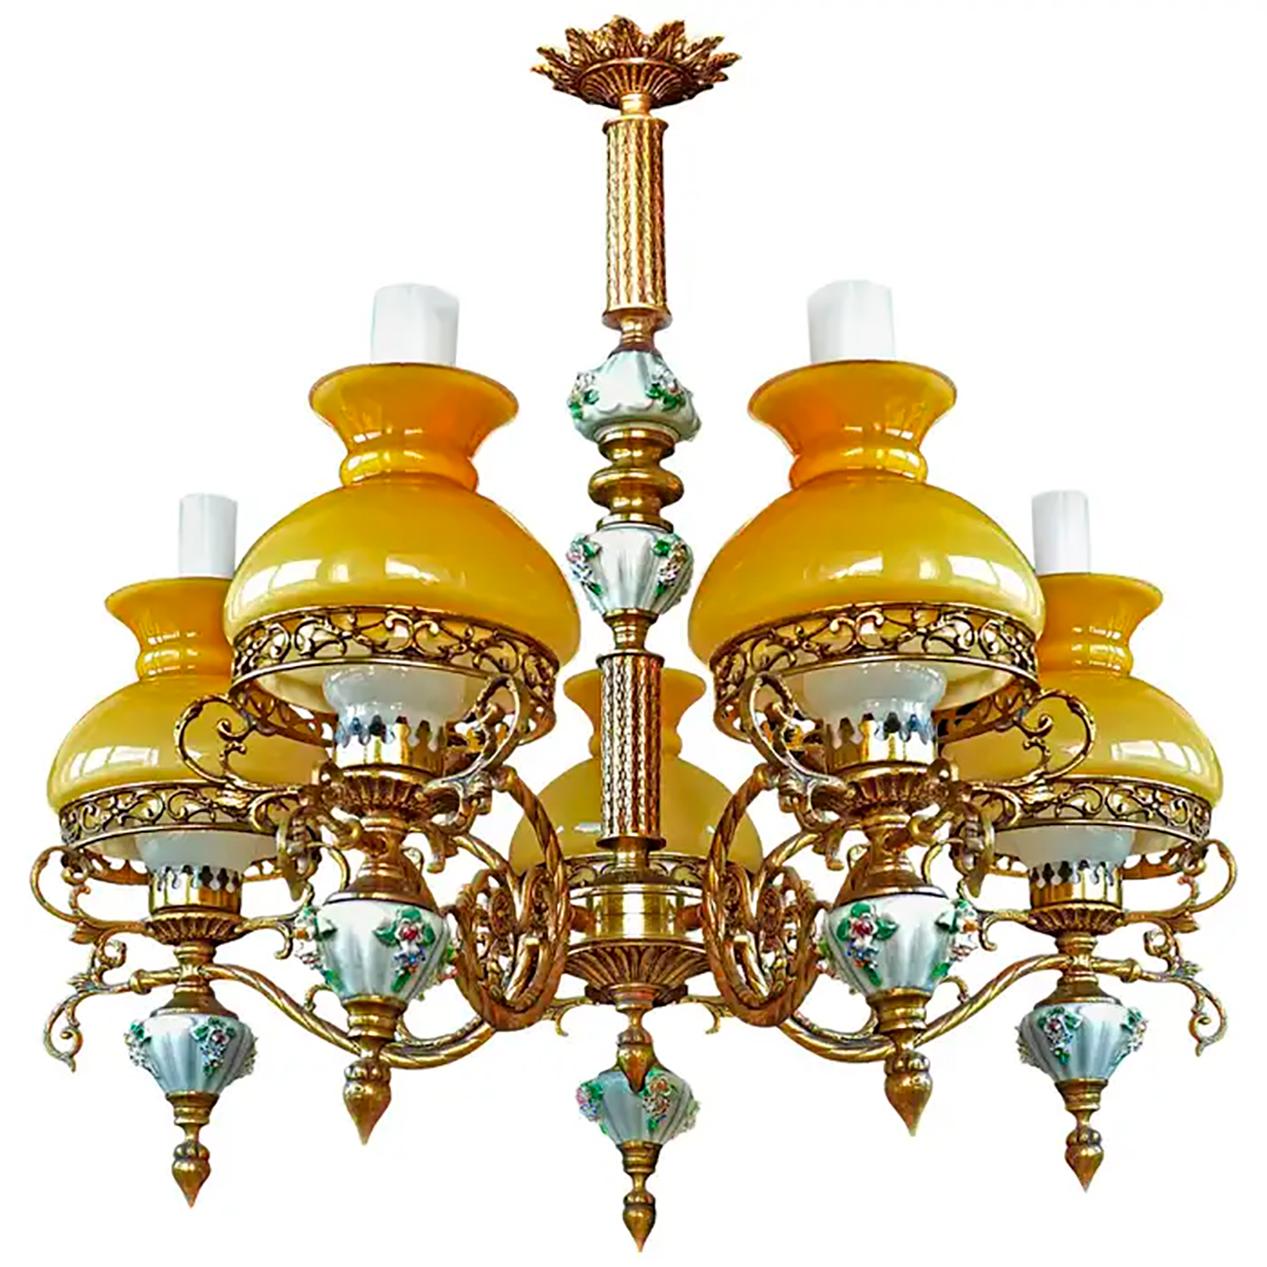 Bernstein Französisch Limoges Porzellan vergoldete Bronze viktorianische Bibliothek Öllampe Kronleuchter